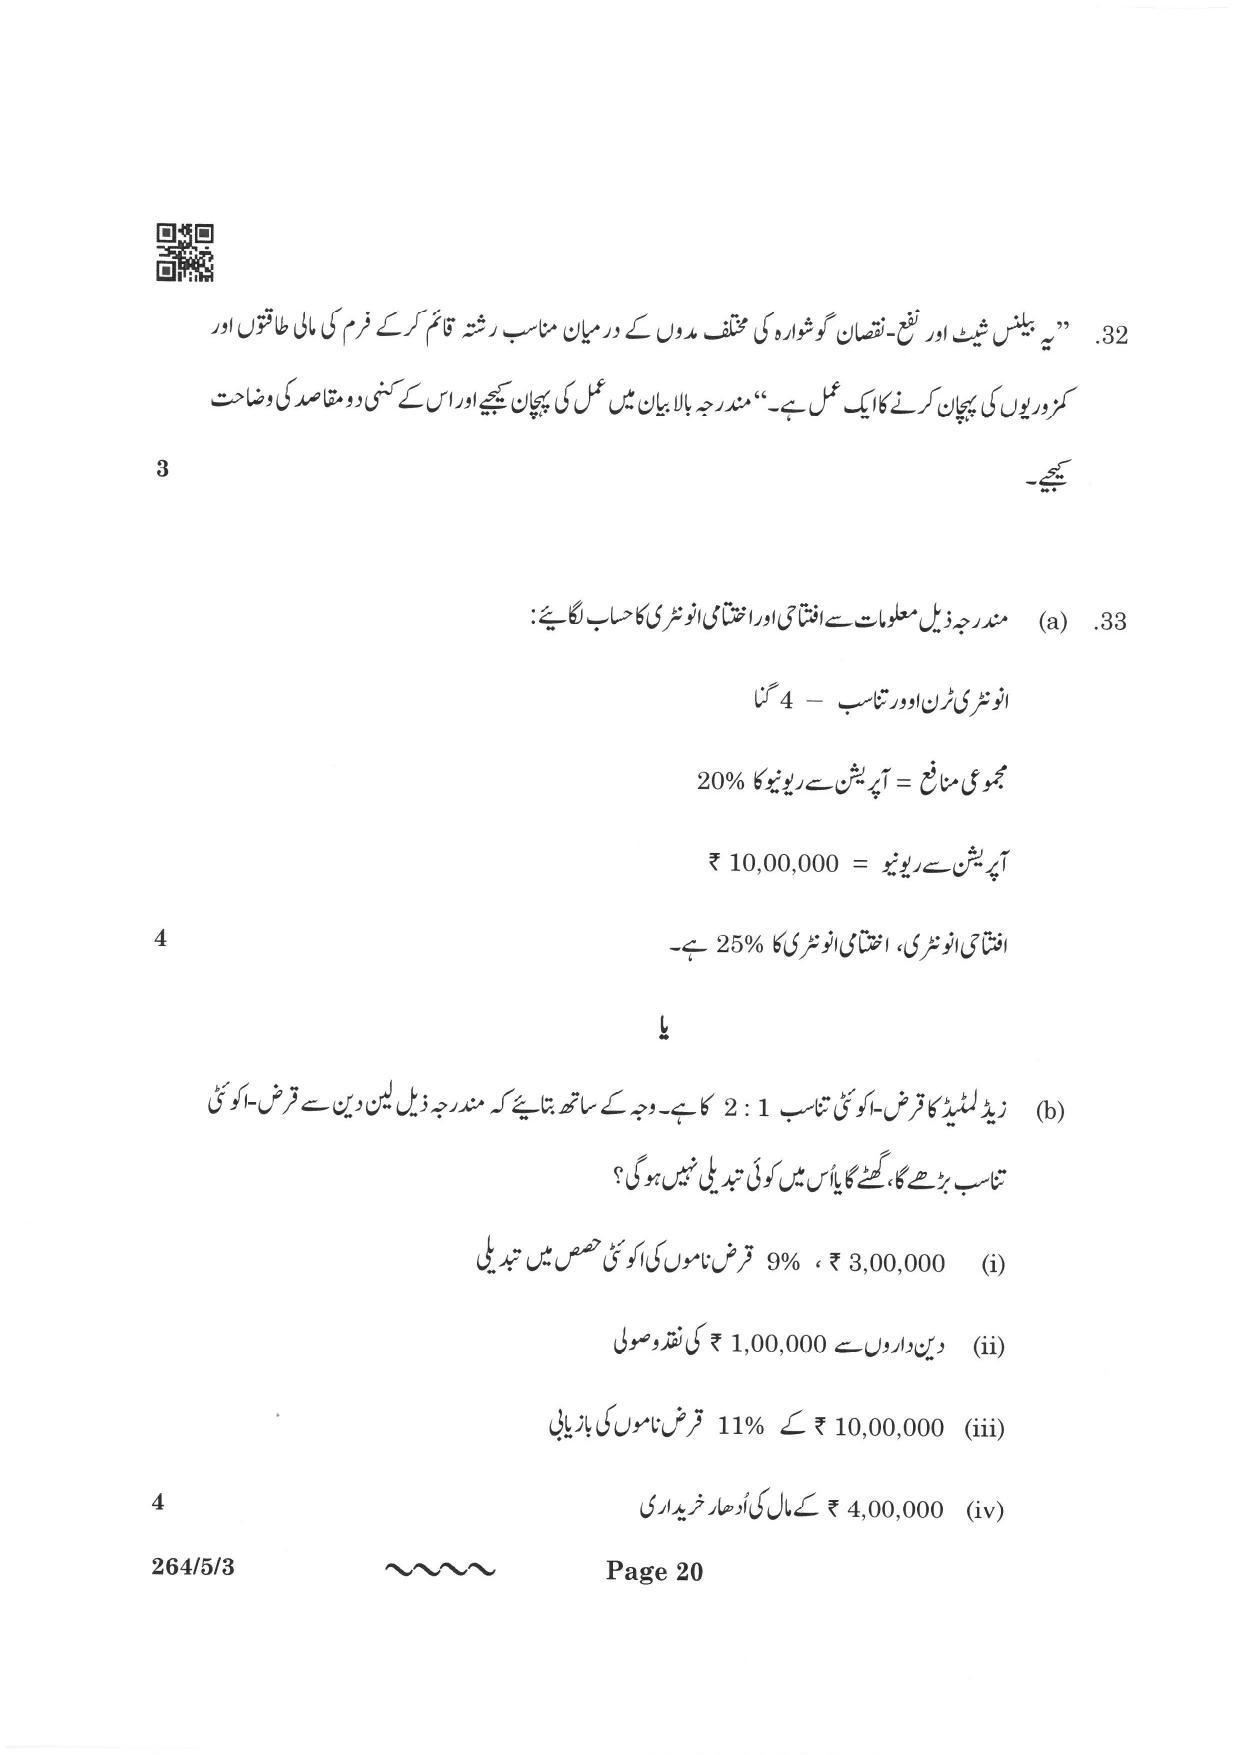 CBSE Class 12 264-5-3 Accountancy Urdu Version 2023 Question Paper - Page 20